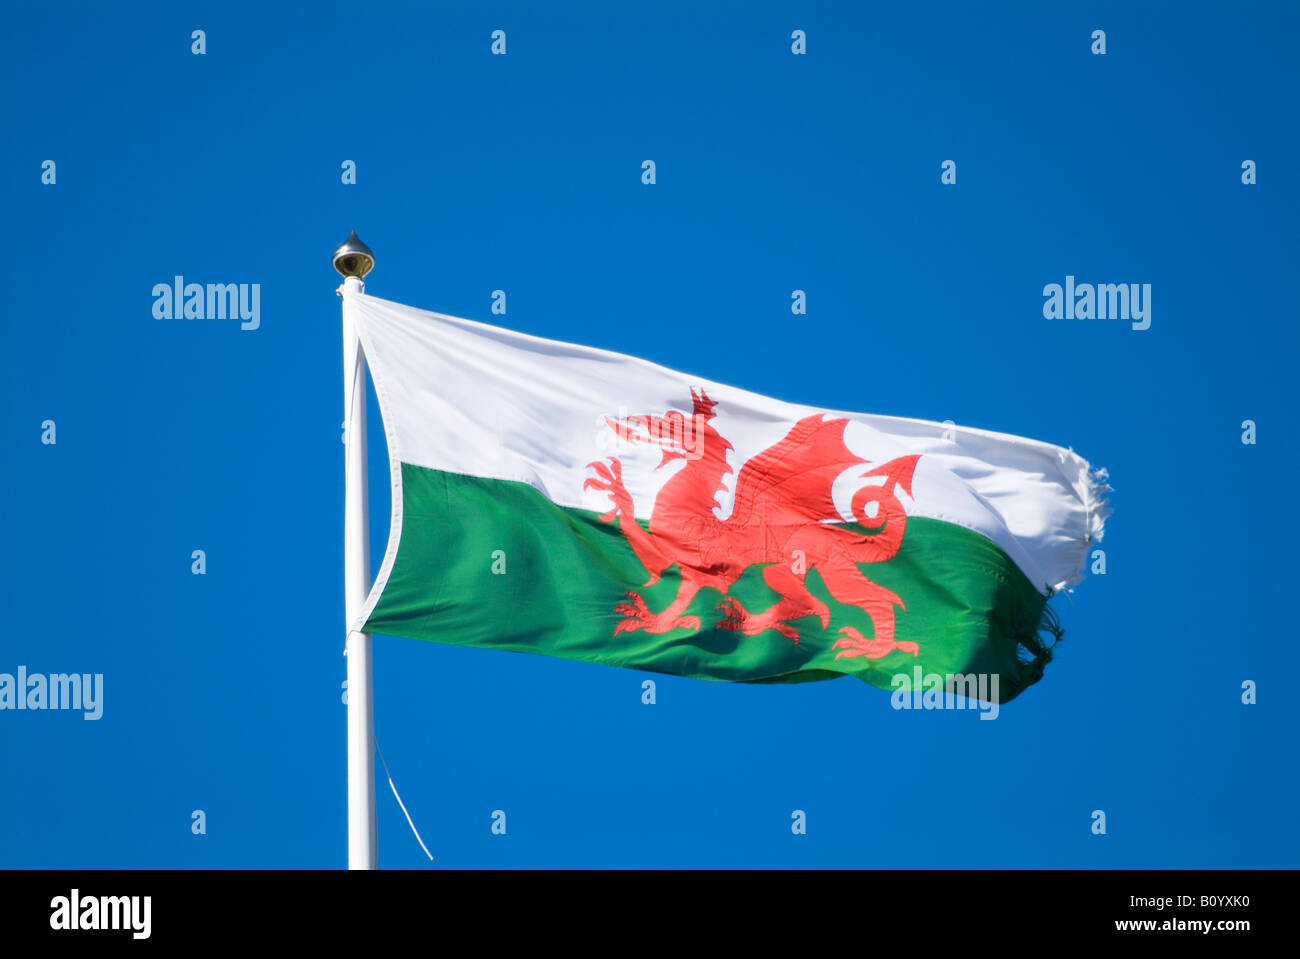 Drapeau Pays de Galles Welsh dh drapeau officiel dragon rouge vert et blanc cymru national vol Banque D'Images